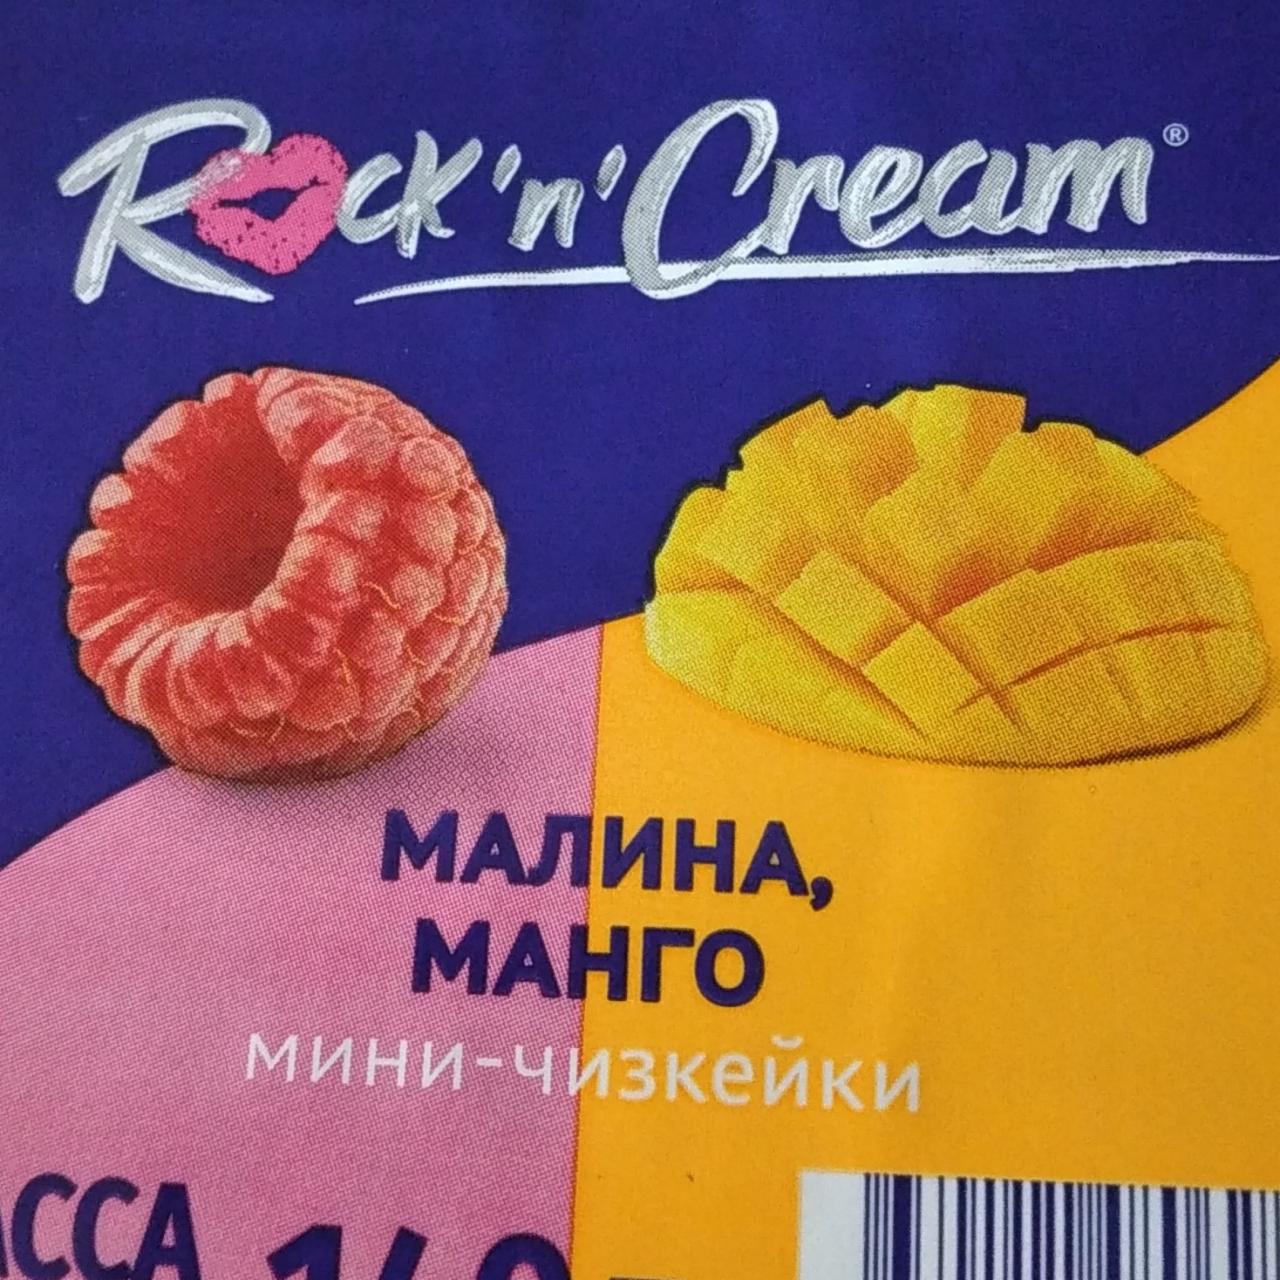 Фото - Пирожное Мини чизкейки малина манго Rock'n'Cream